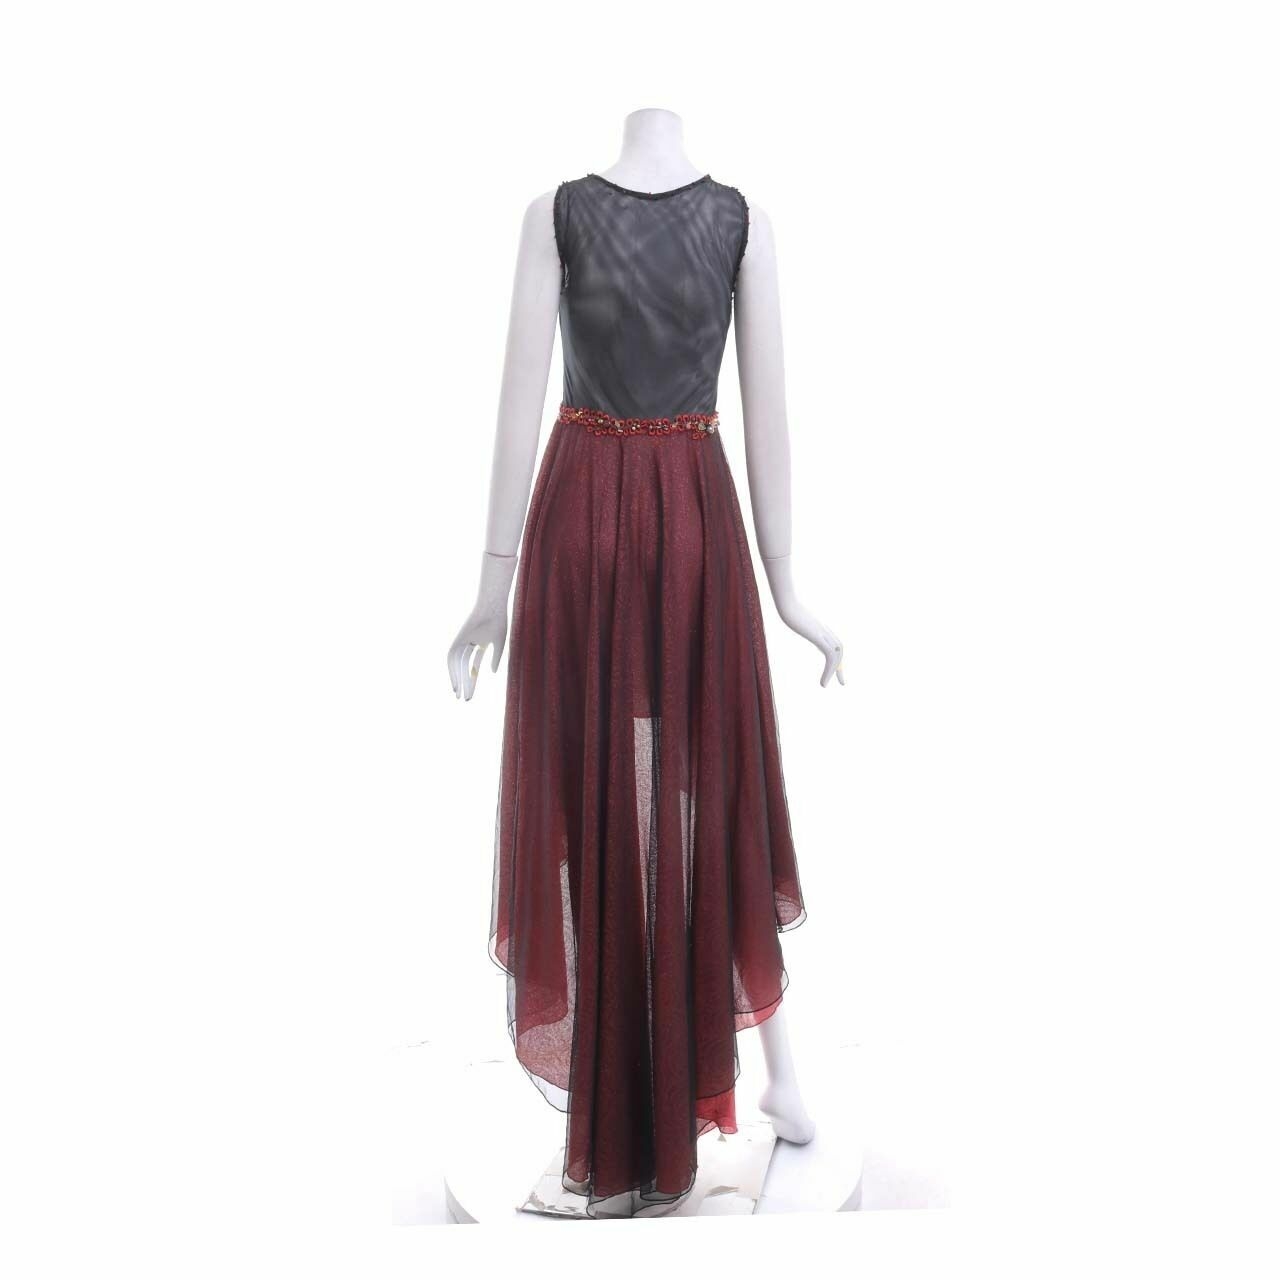 Luire By Raden Sirait Black & Red Mini Dress